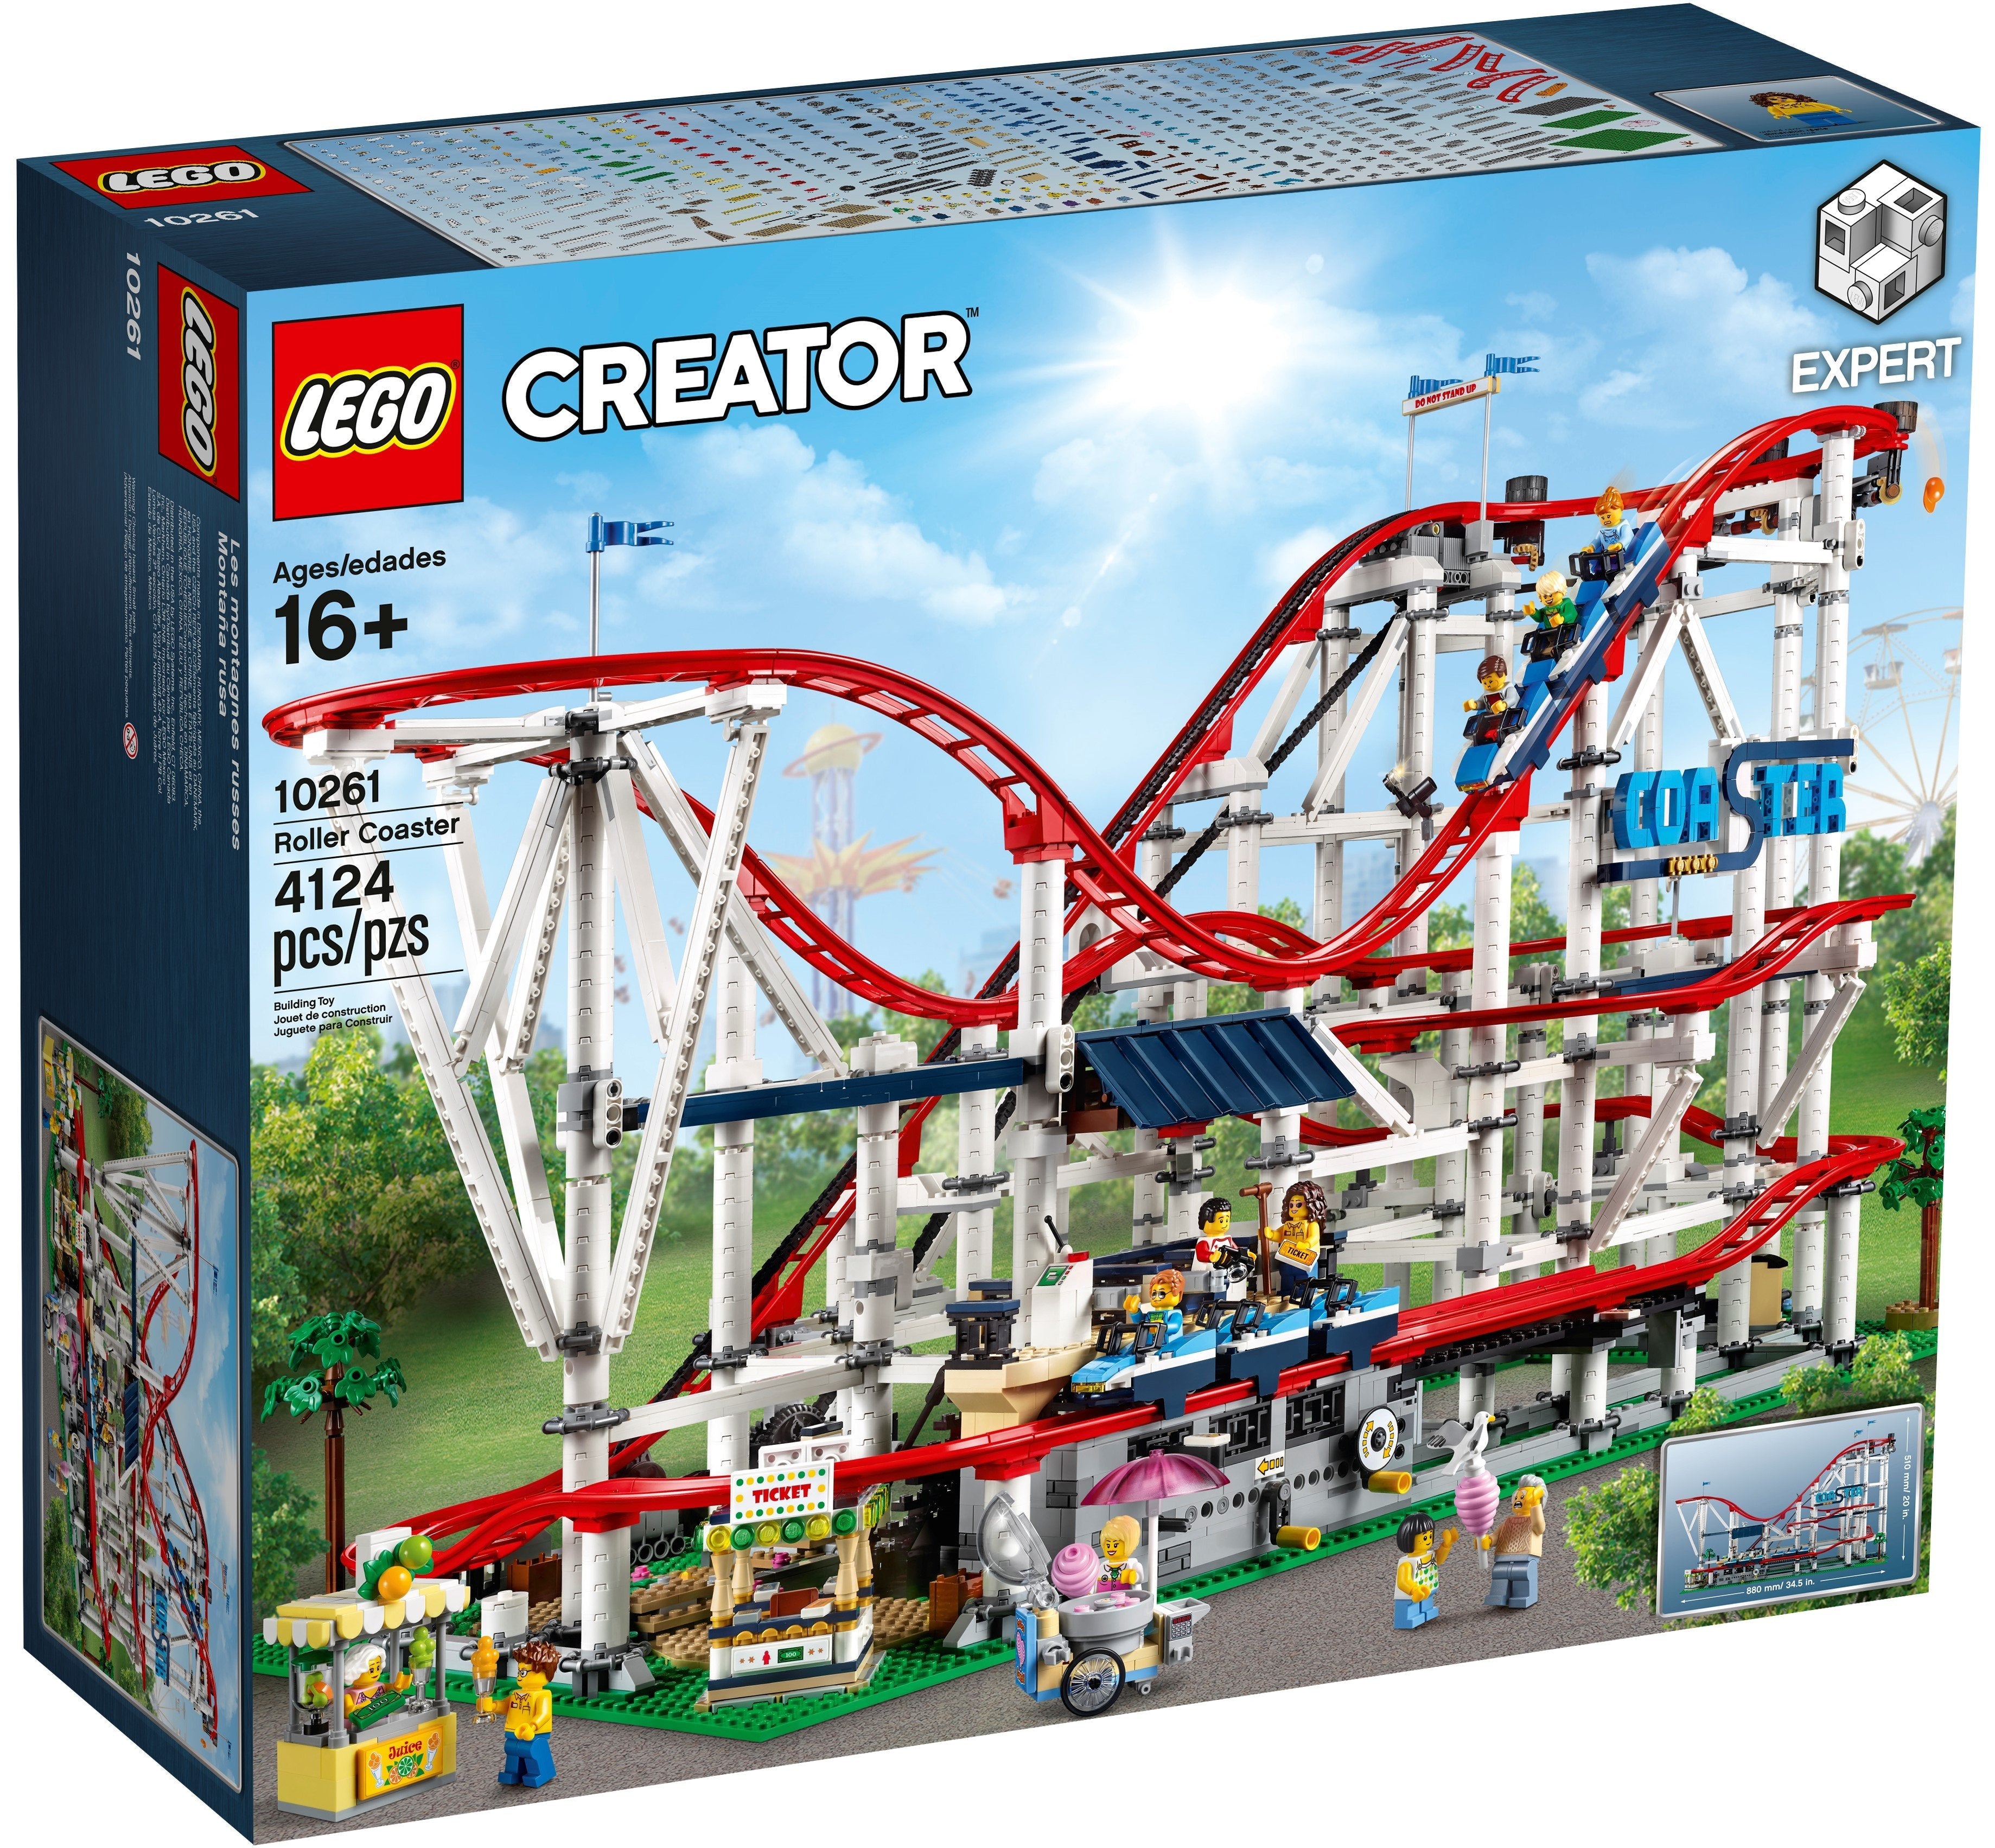 LEGO Creator Expert Achterbahn (10261) - im GOLDSTIEN.SHOP verfügbar mit Gratisversand ab Schweizer Lager! (5702016111835)